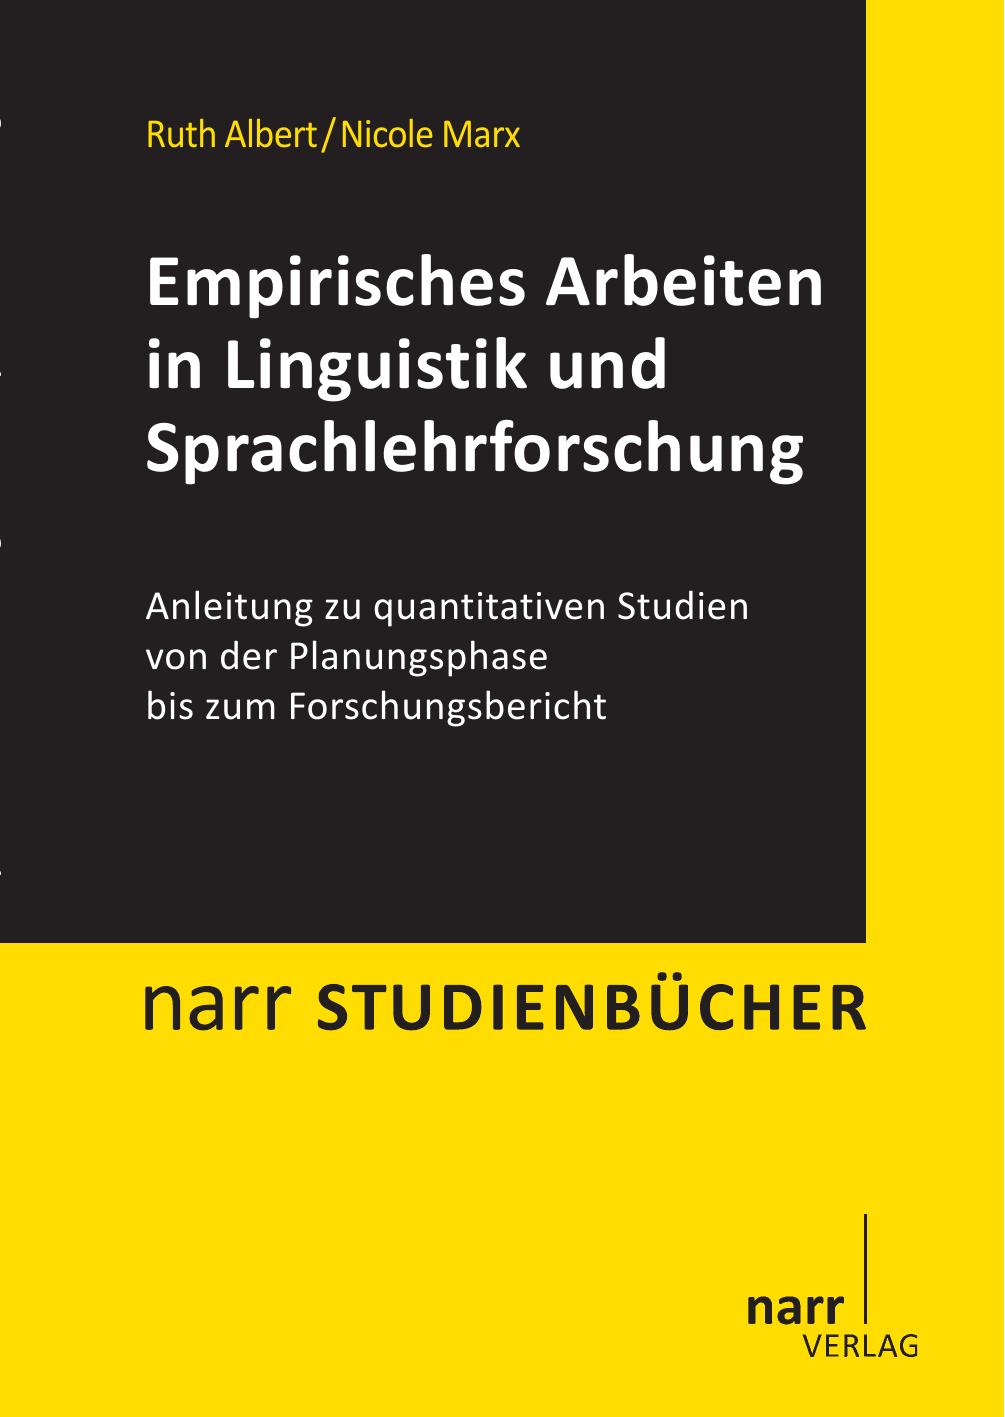 Empirisches Arbeiten in Linguistik und Sprachlehrforschung: Anleitung zu quantitativen Studien von der Planungsphase bis zum Forschungsbericht